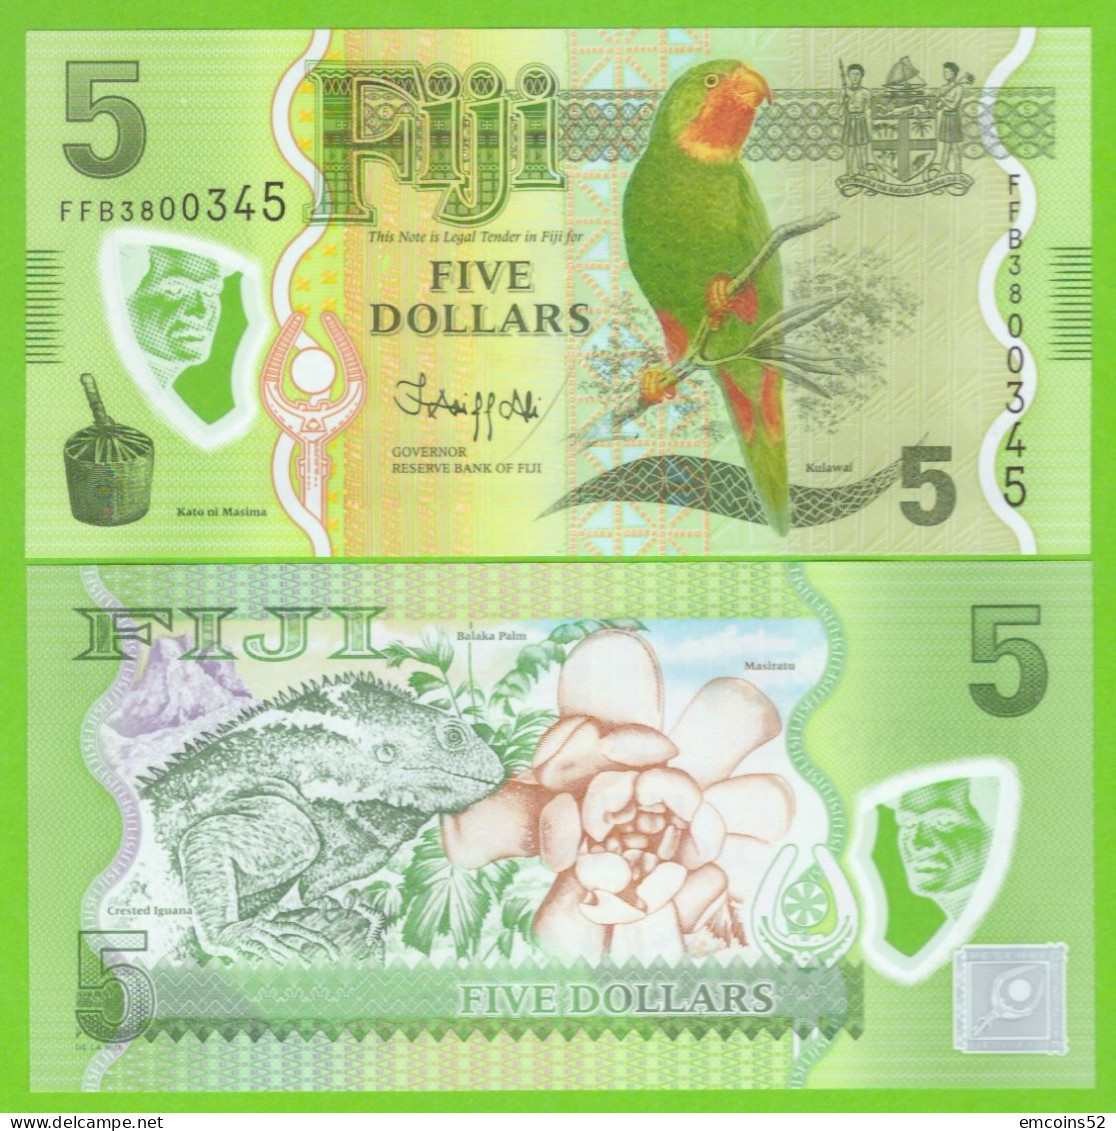 FIJI 5 DOLLARS 2012/2022  P-115(2) UNC - Fidji